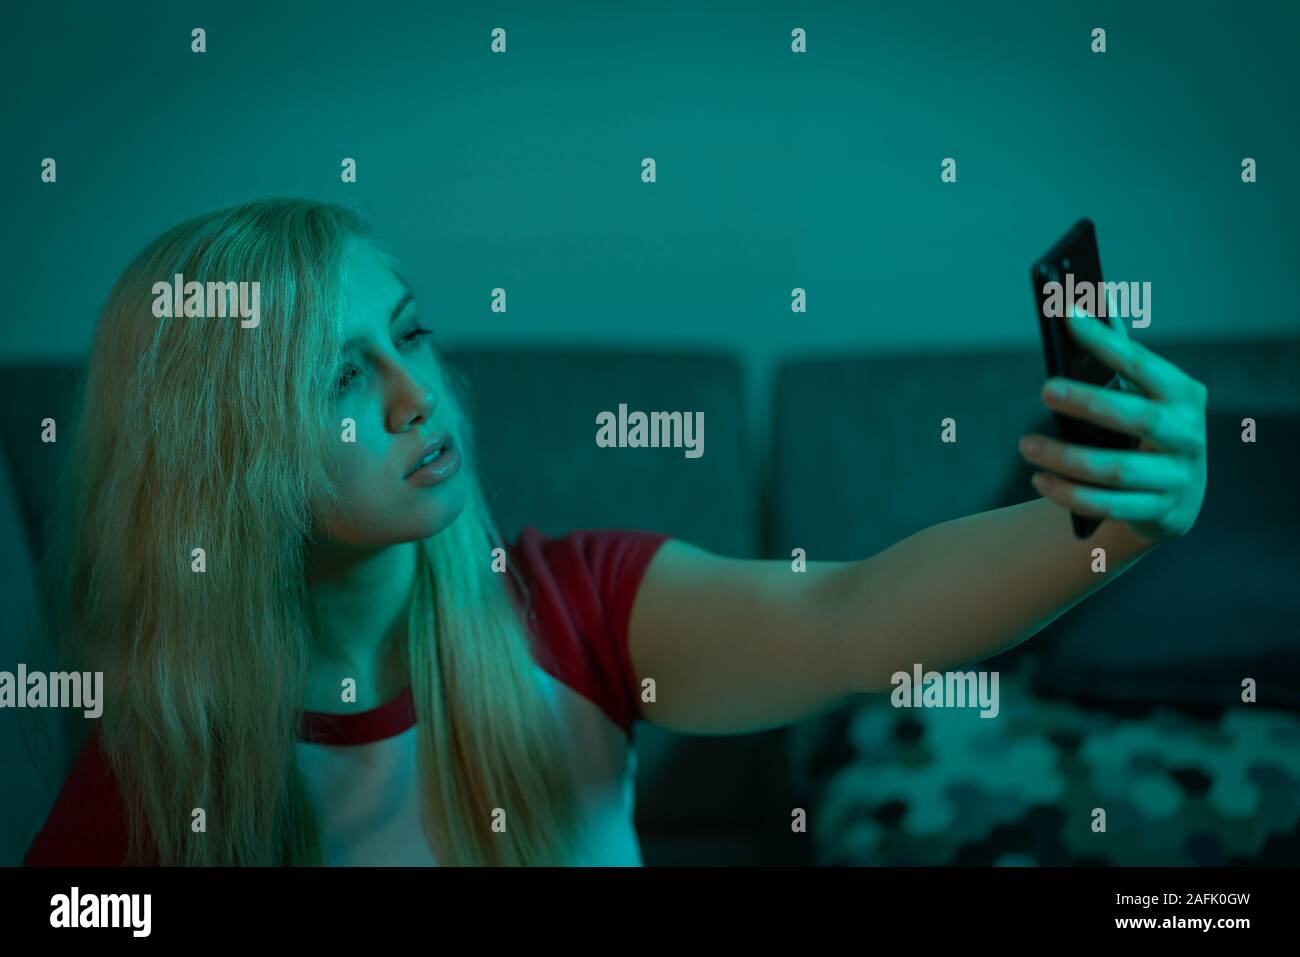 Jóvenes aburridos chica teniendo selfie milenario en verde azulado iluminación con teléfono móvil Foto de stock